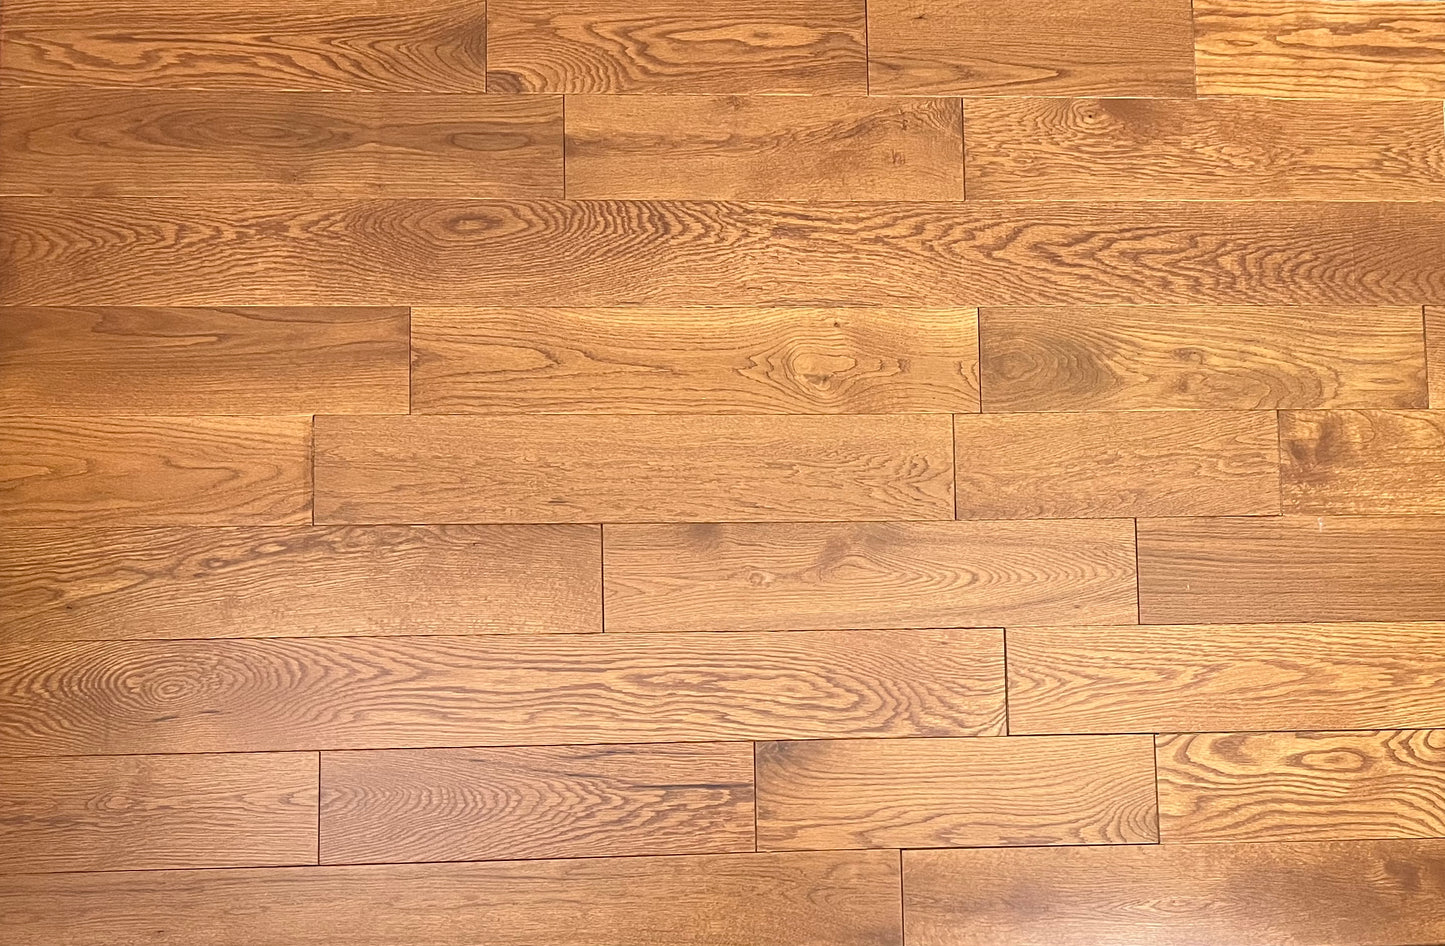 5" x 3/4" Solid White Oak Gunstock Hardwood Flooring